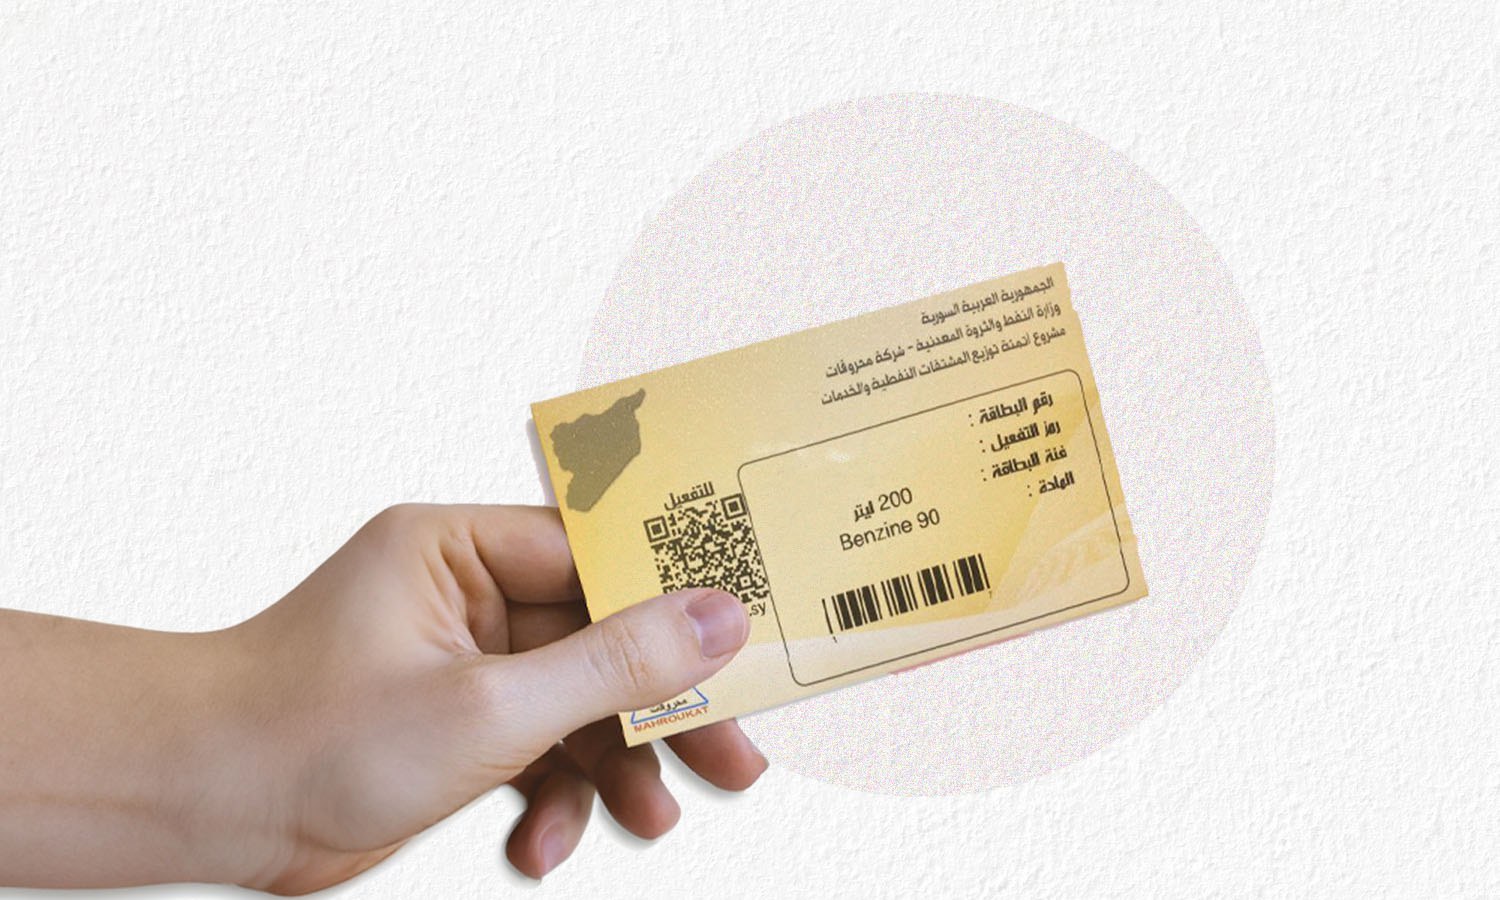 "بطاقة زائر" لبيع المحروقات في سوريا (تعديل عنب بلدي)